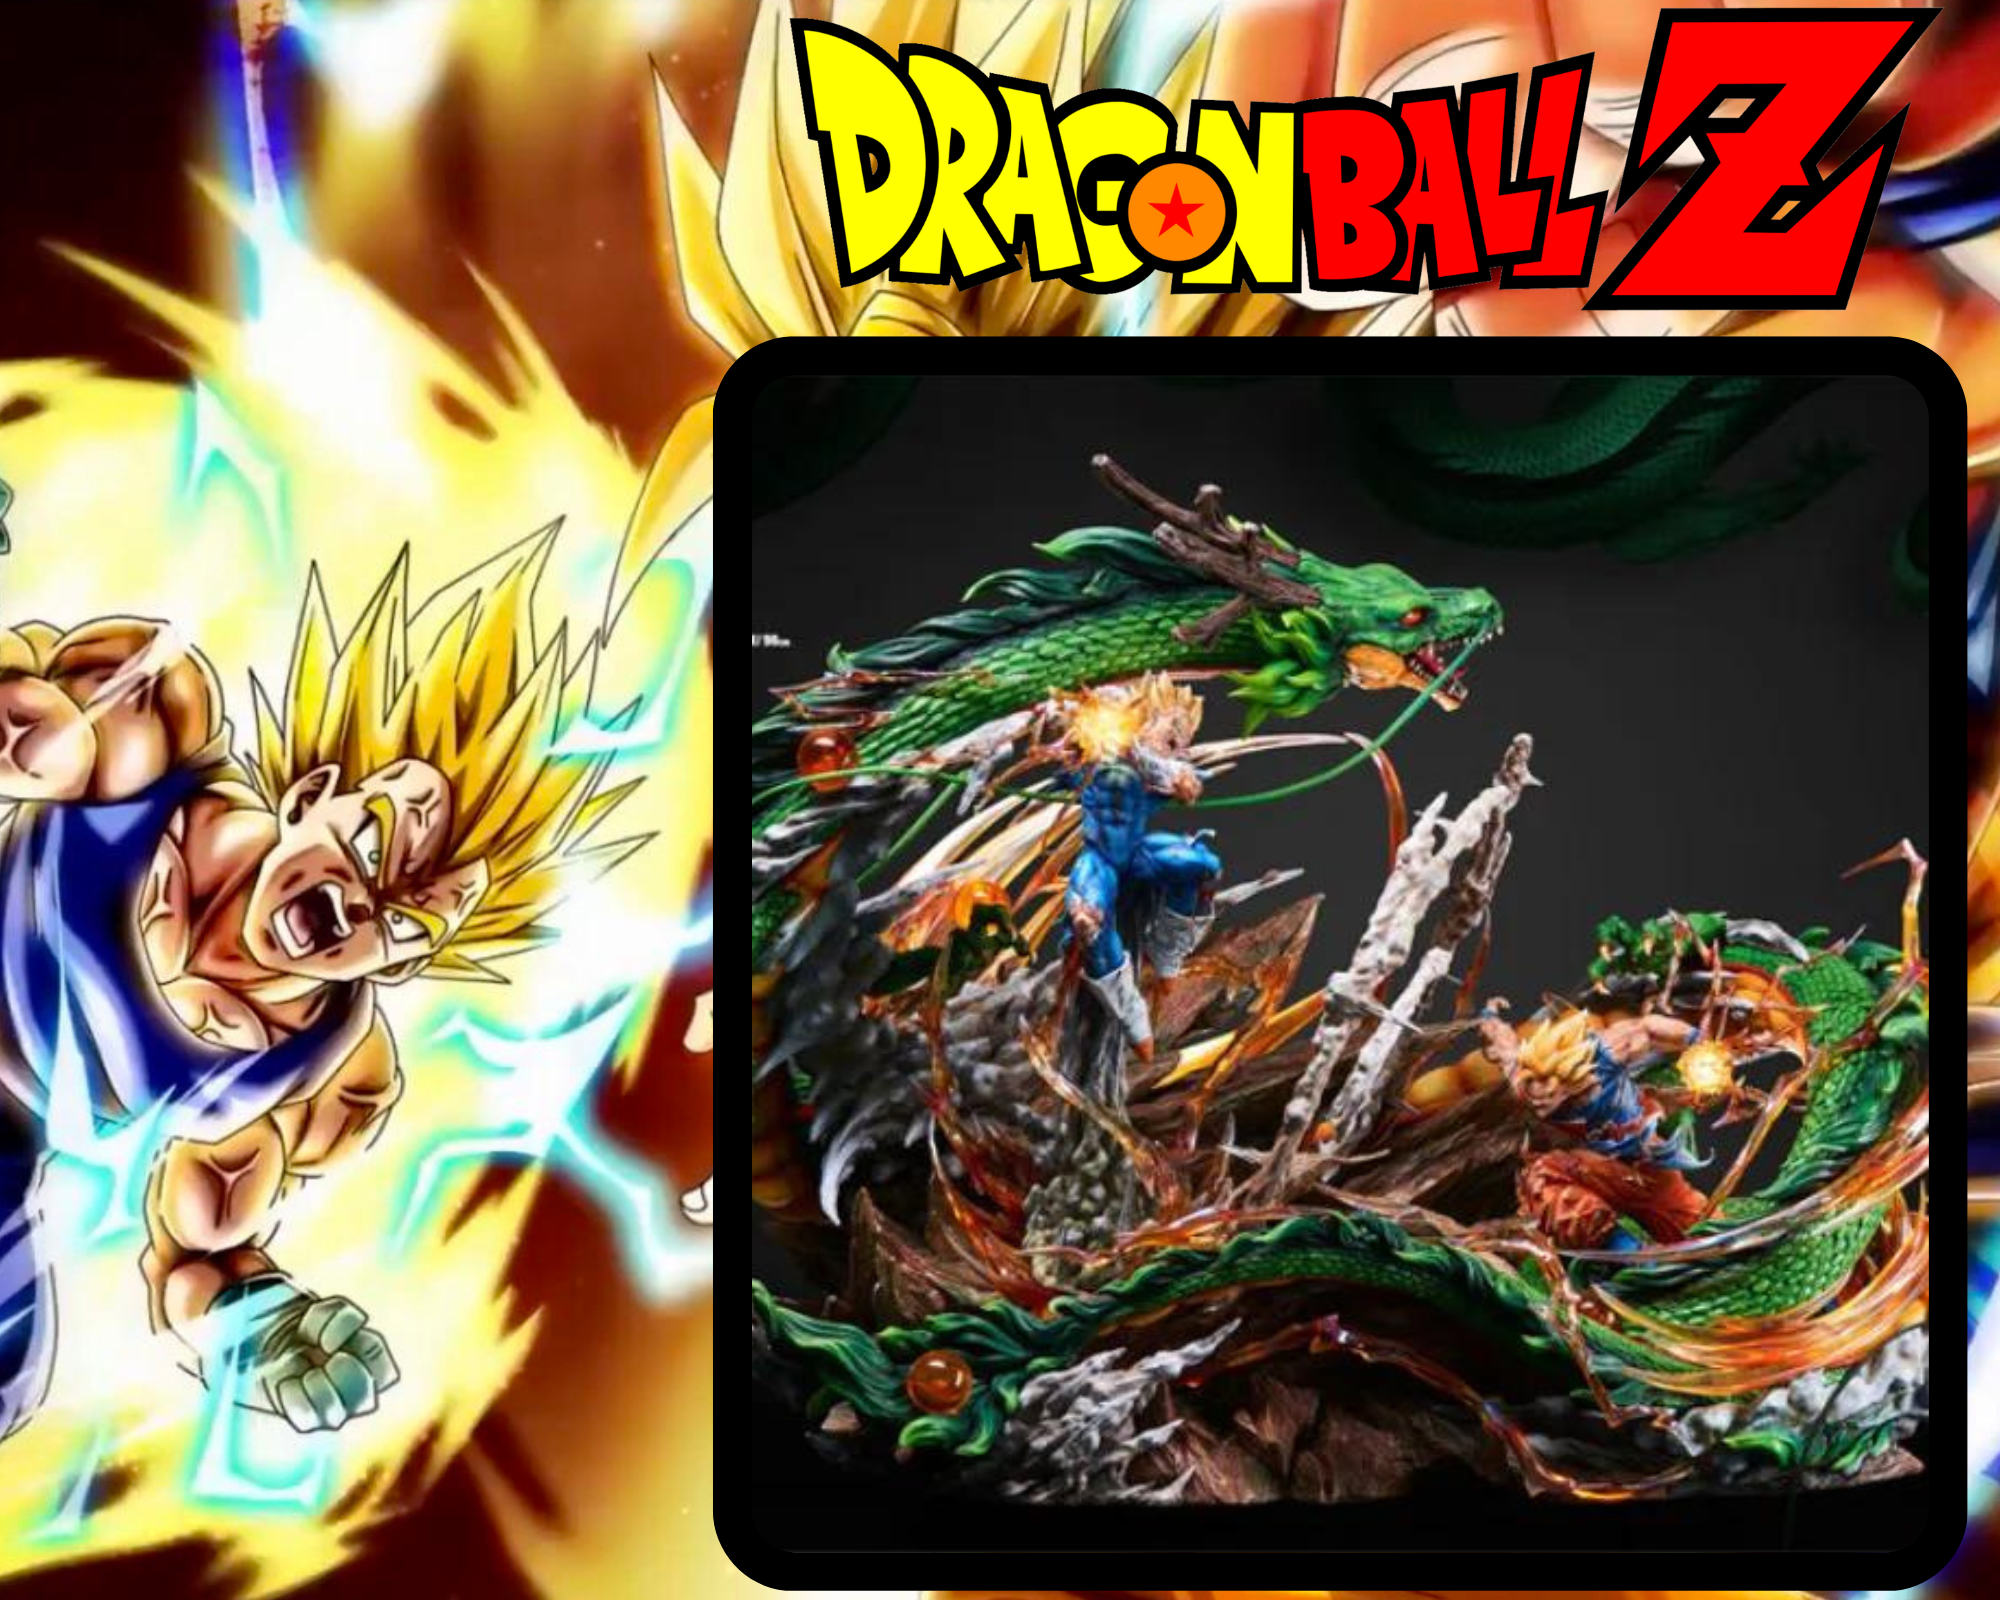 Goku Super sayajin blue 2 X vegeta Super sayajin blue 2 magin in 2023   Anime dragon ball super, Anime dragon ball, Dragon ball super artwork